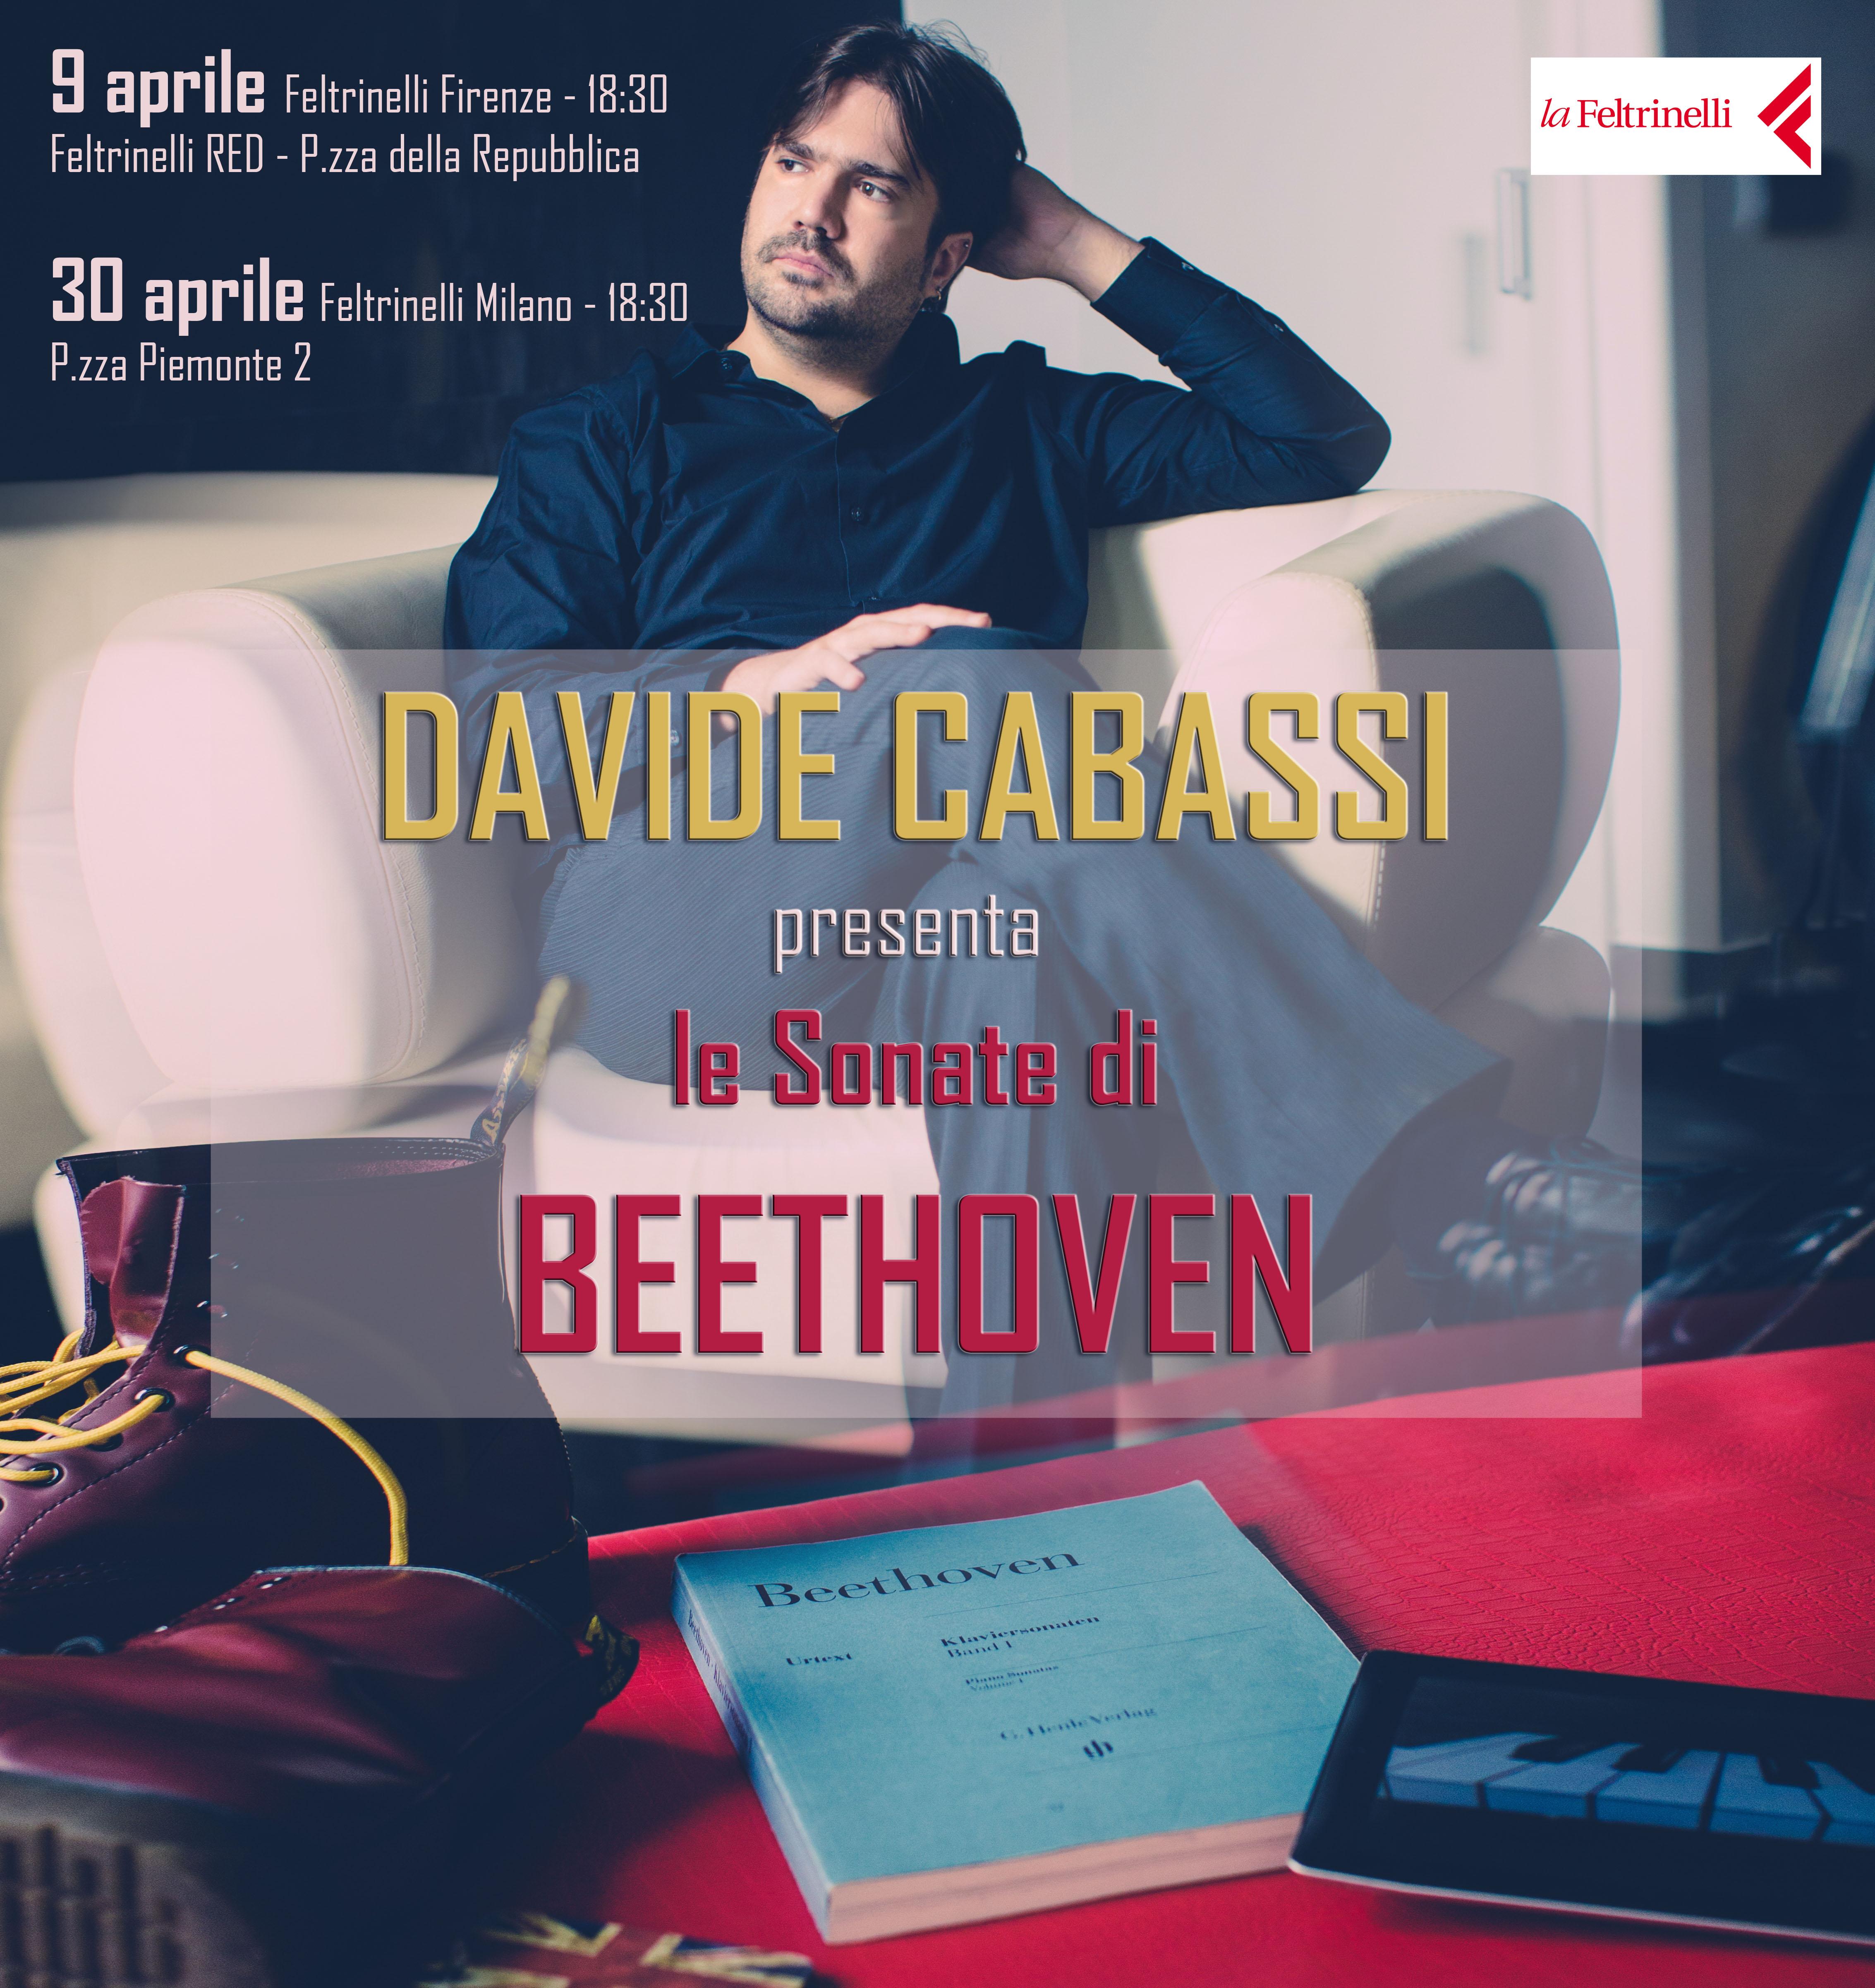 Davide Cabassi presenta il suo album in Feltrinelli